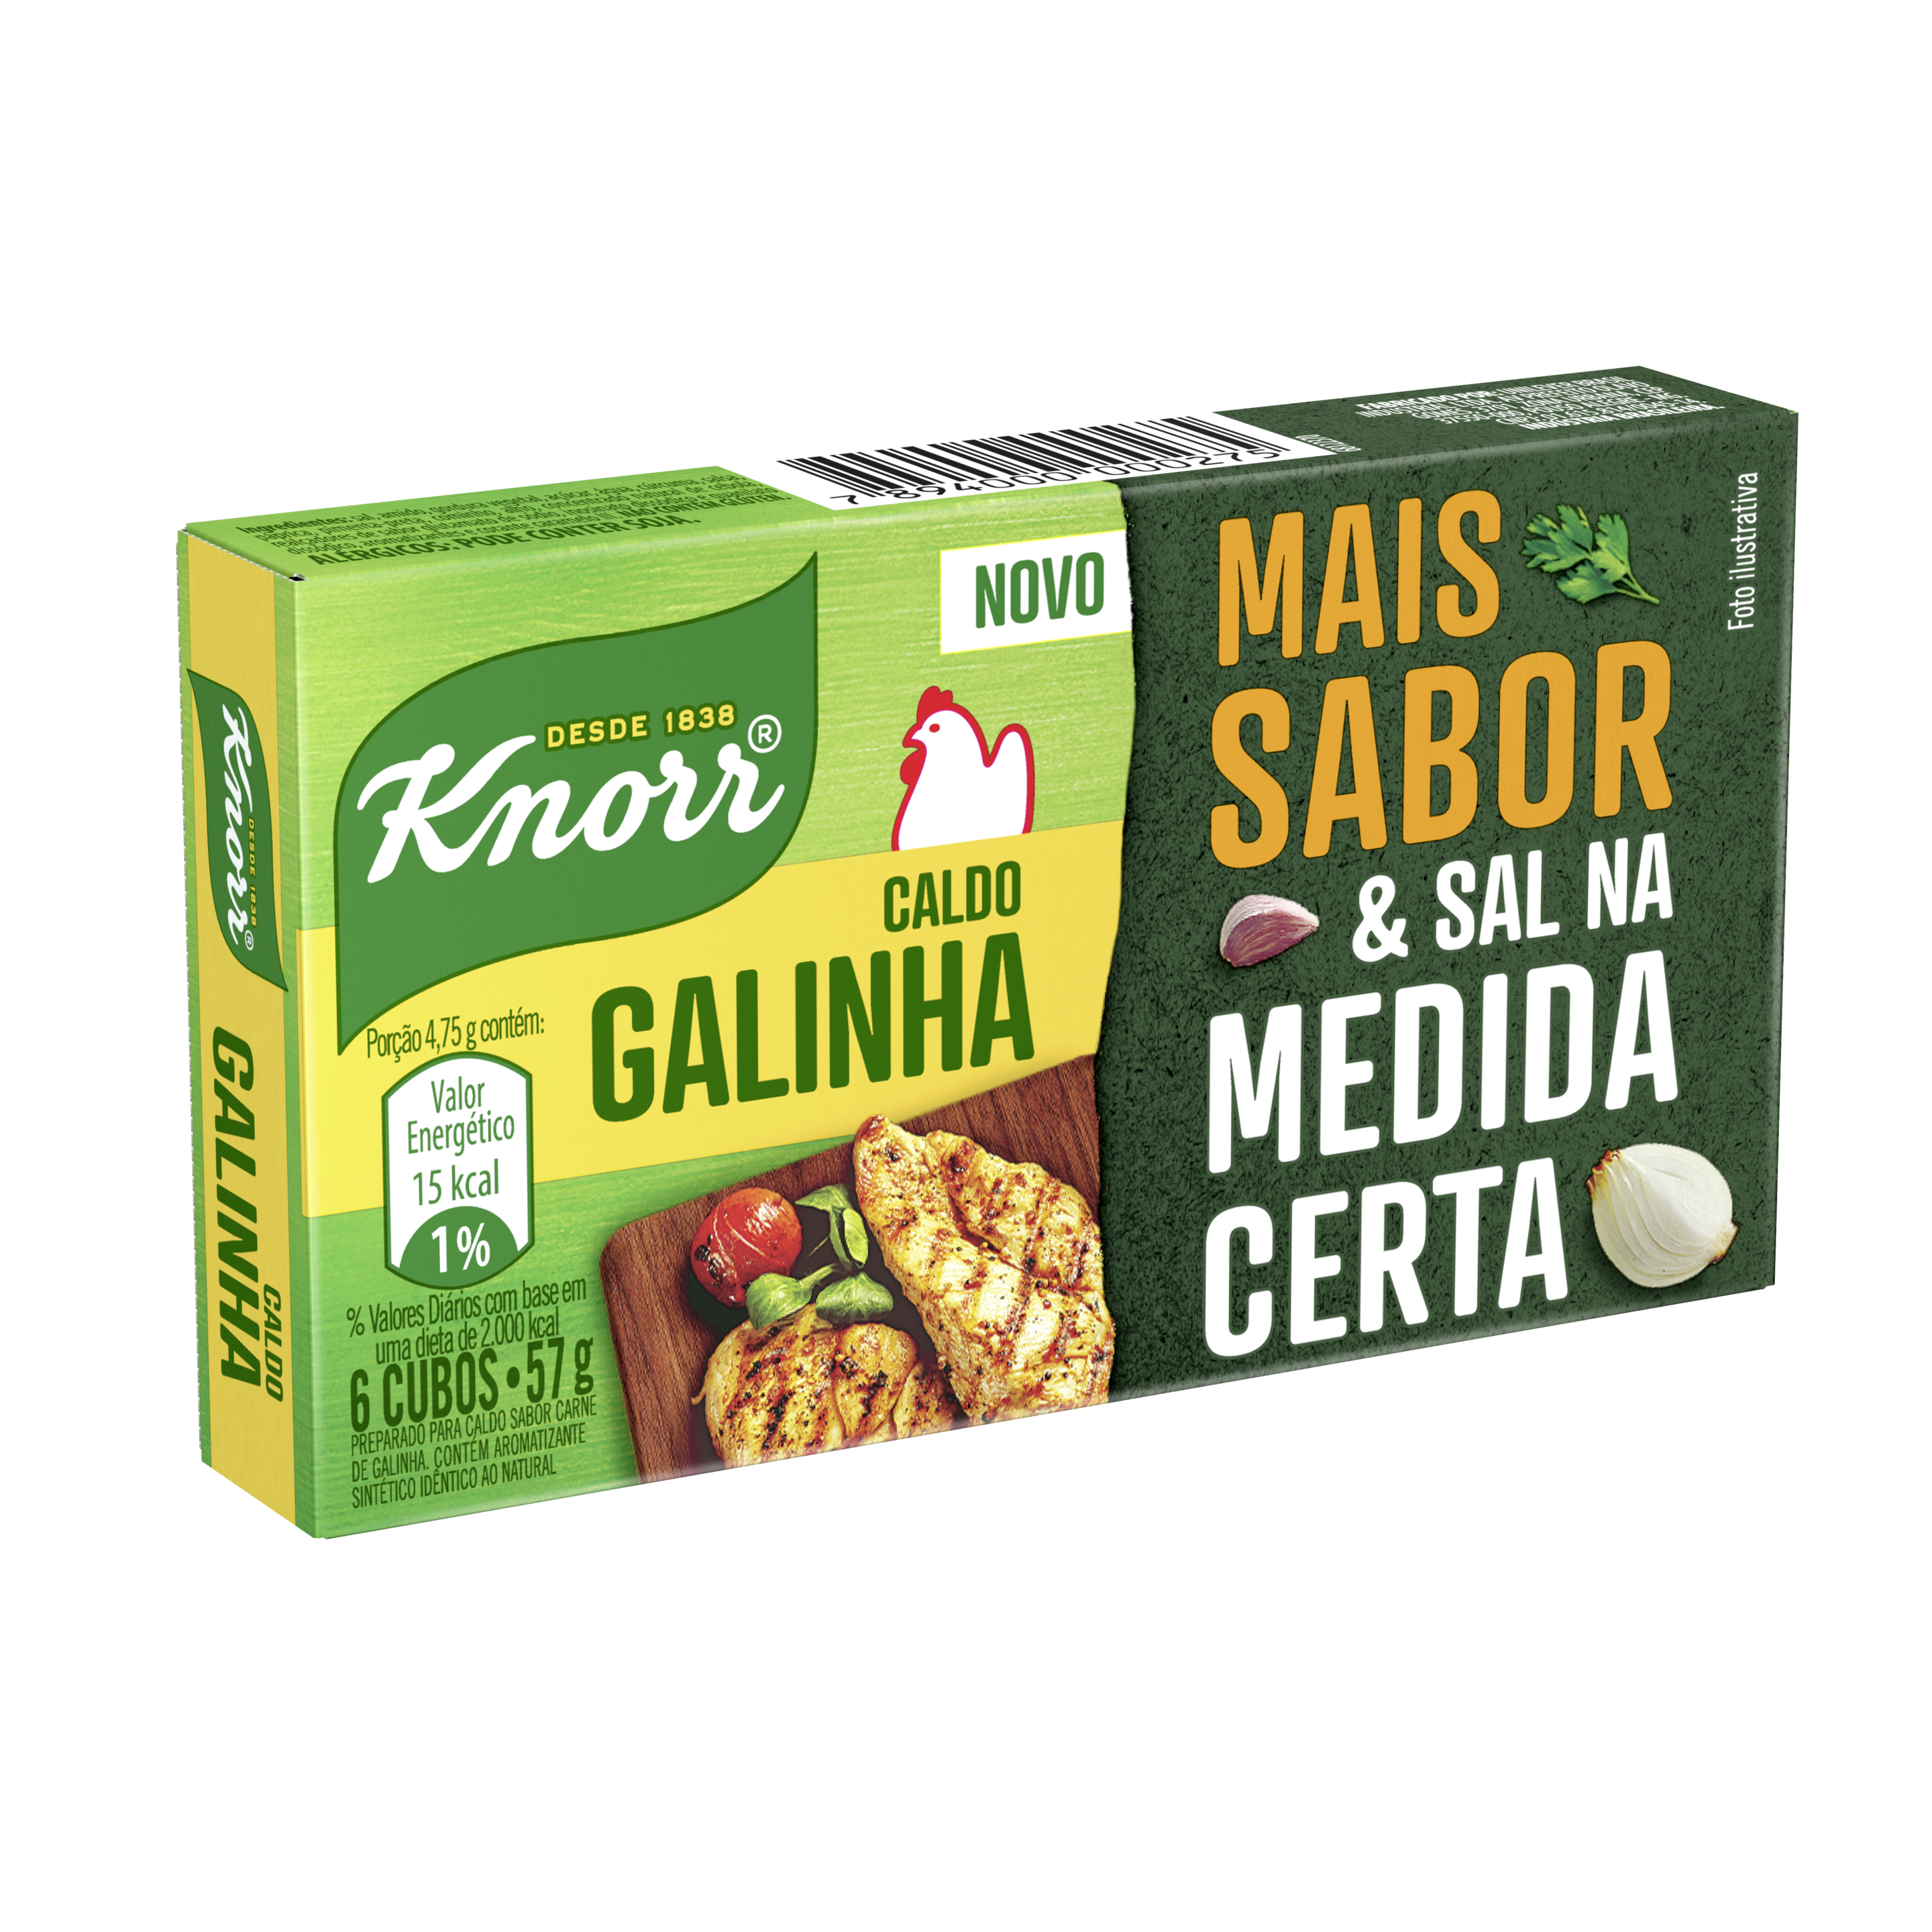 Caldo Knorr Galinha